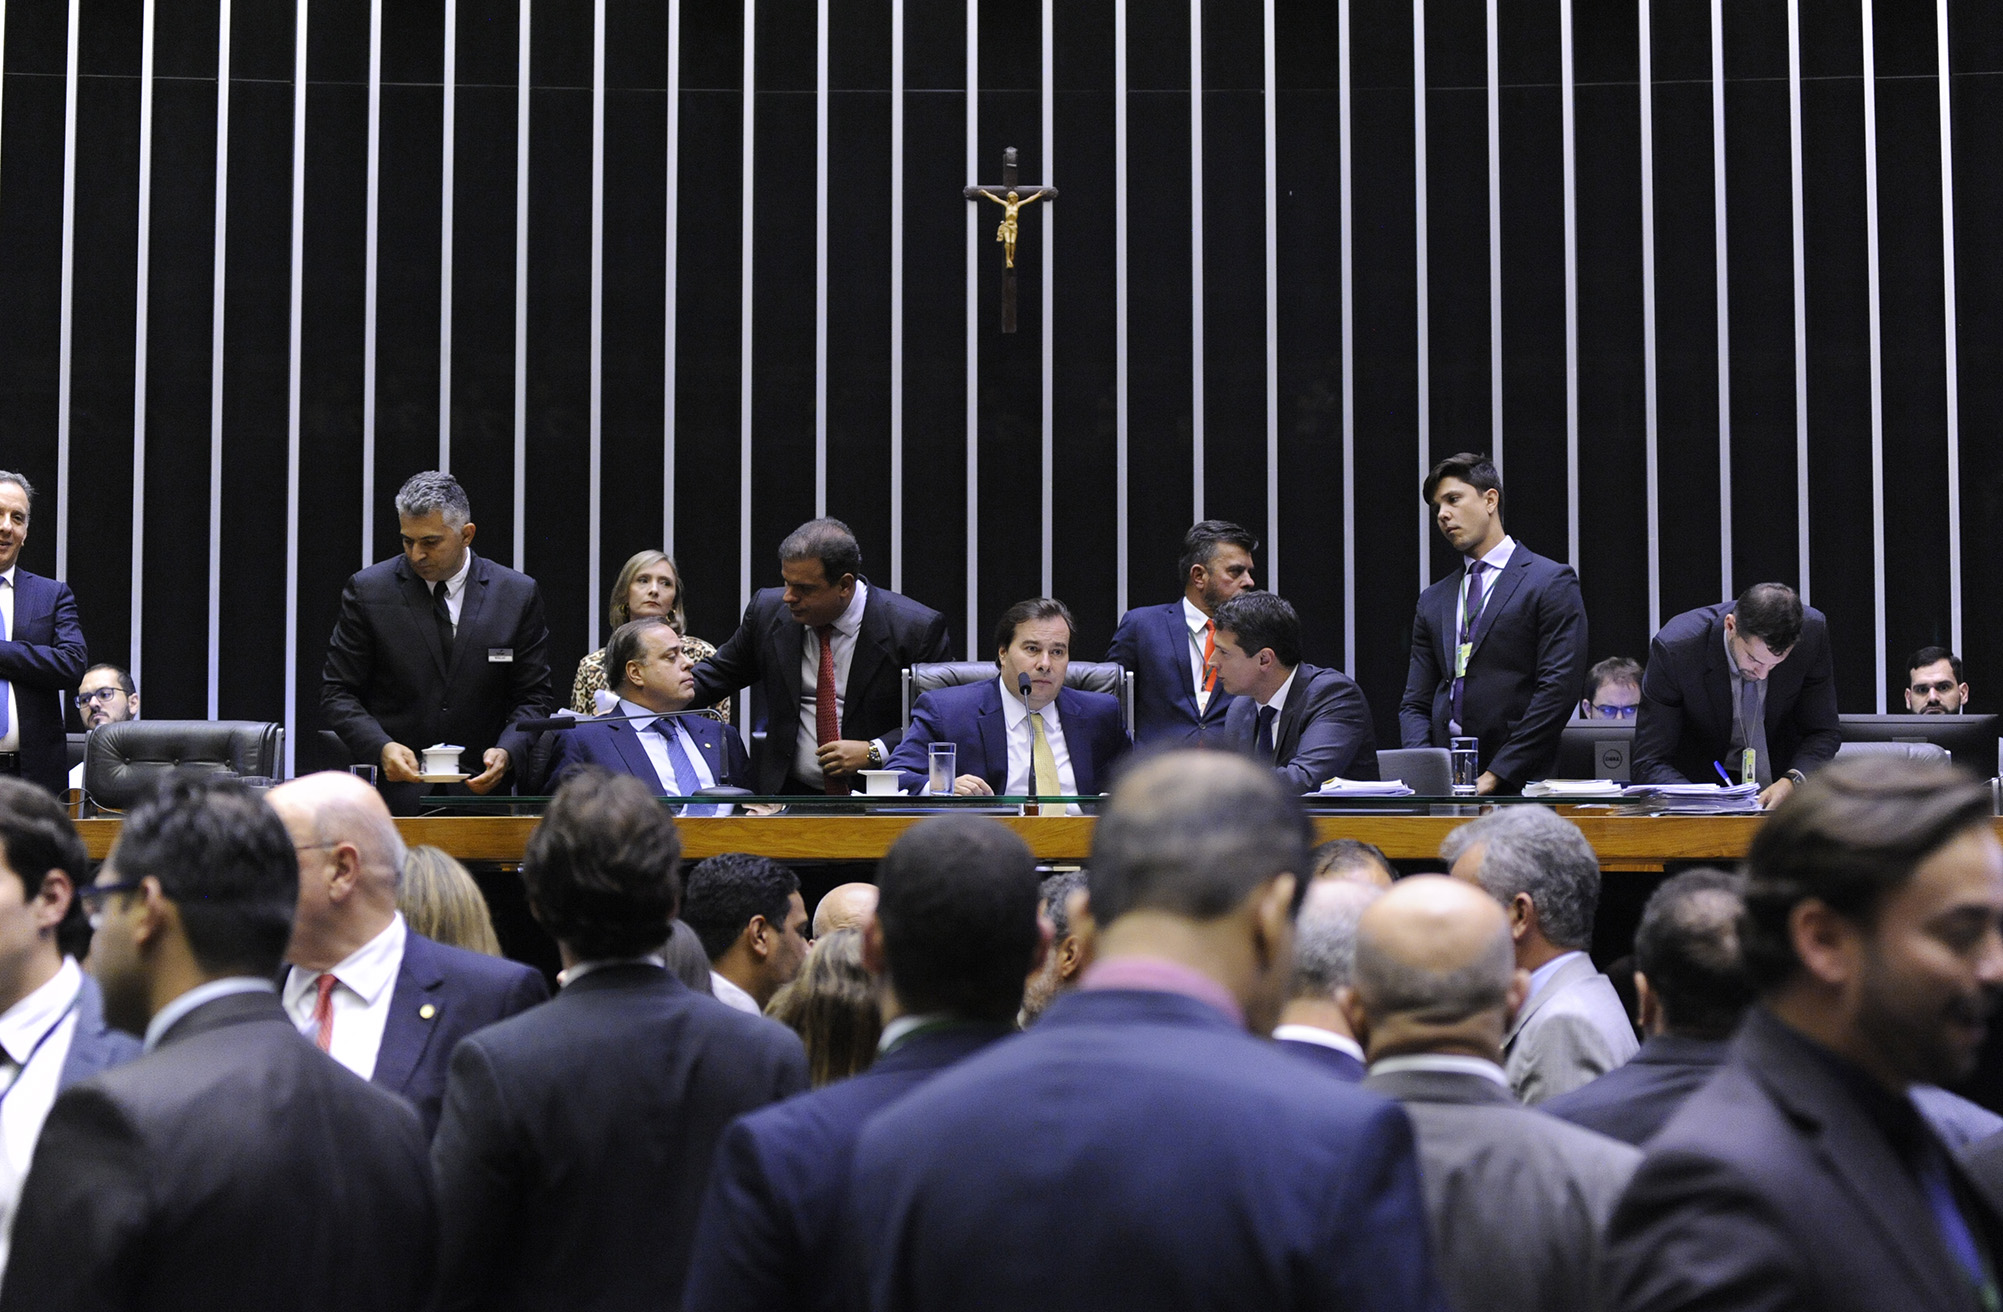 Câmara dos Deputados n]ao consegue chegar a consenso sobre textos de Brumadinho / Foto: Agência Câmara